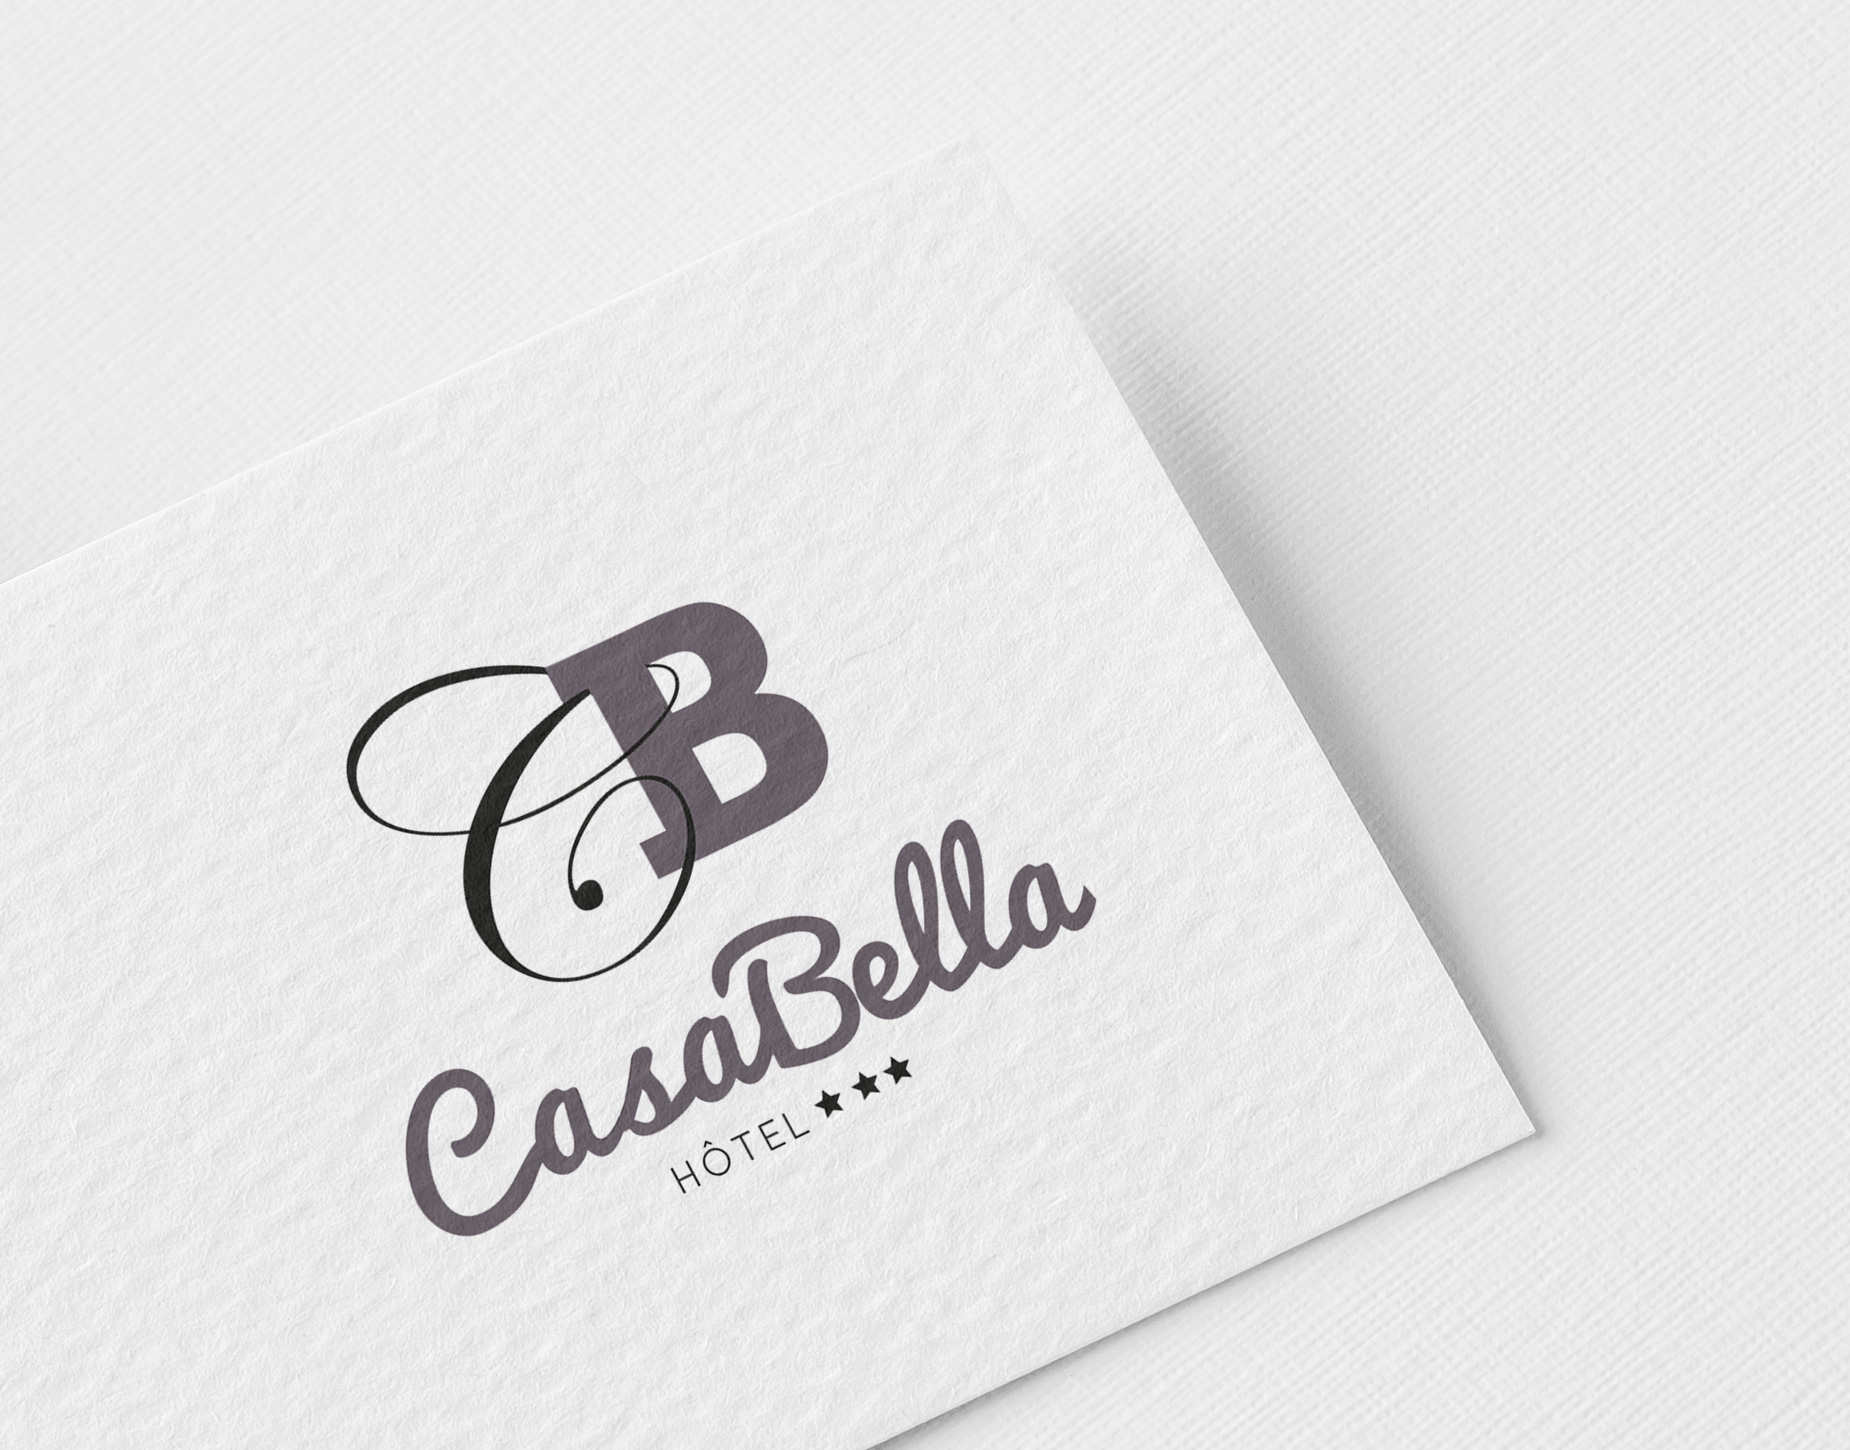 Logo Casabella